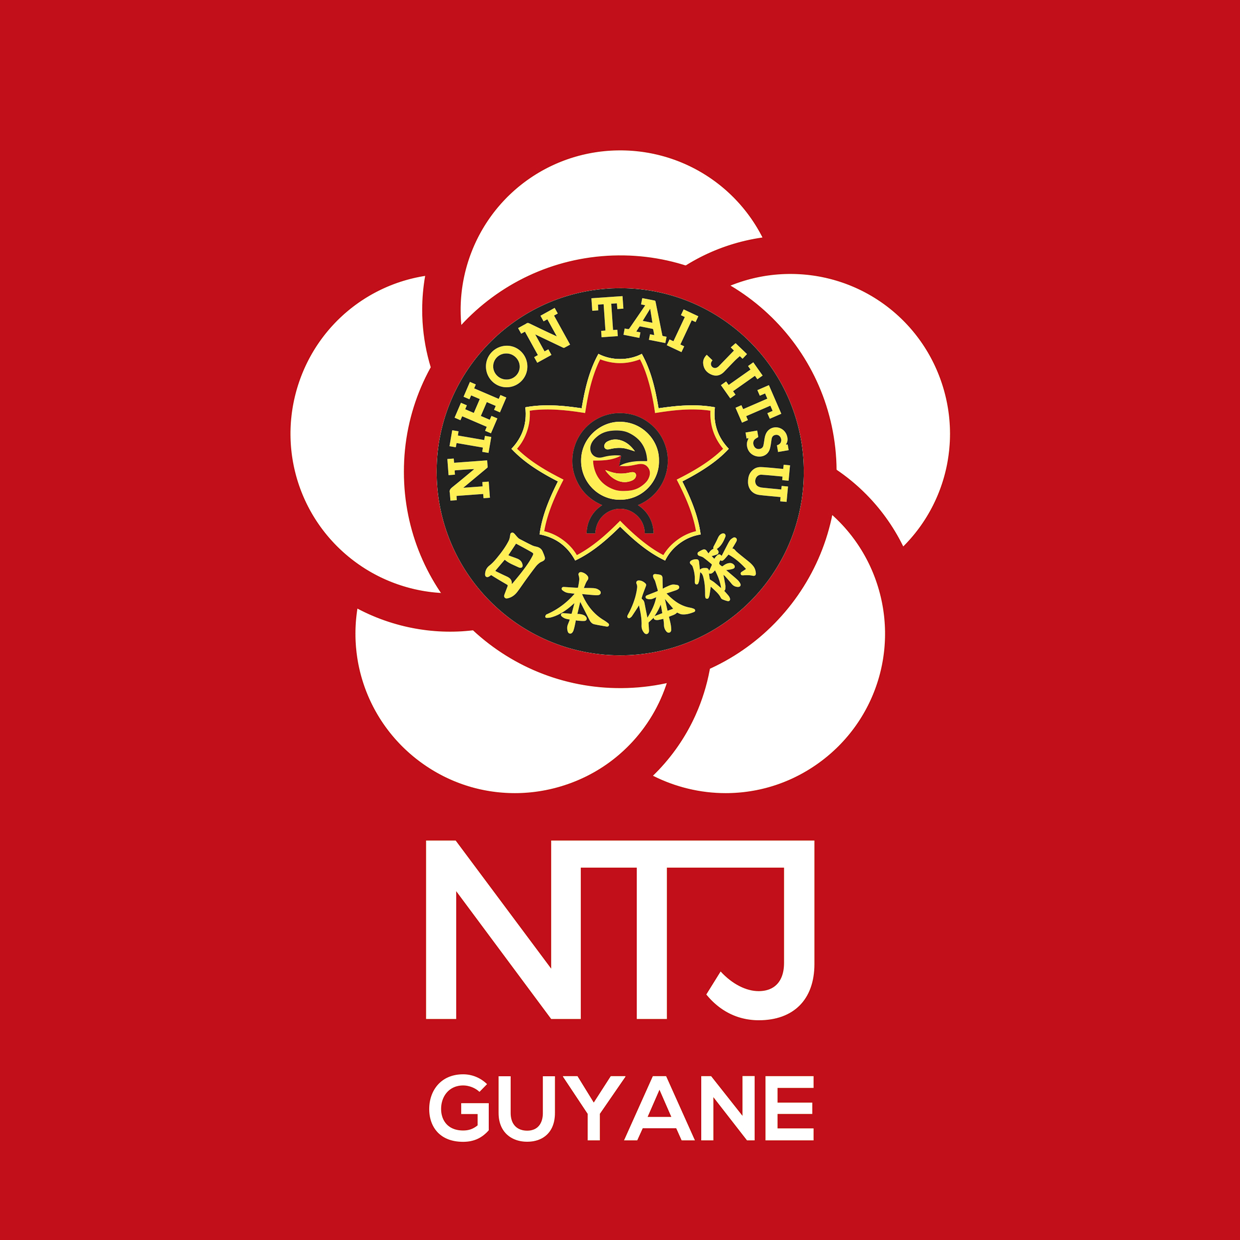 NTJ region GUYANE logo rvb